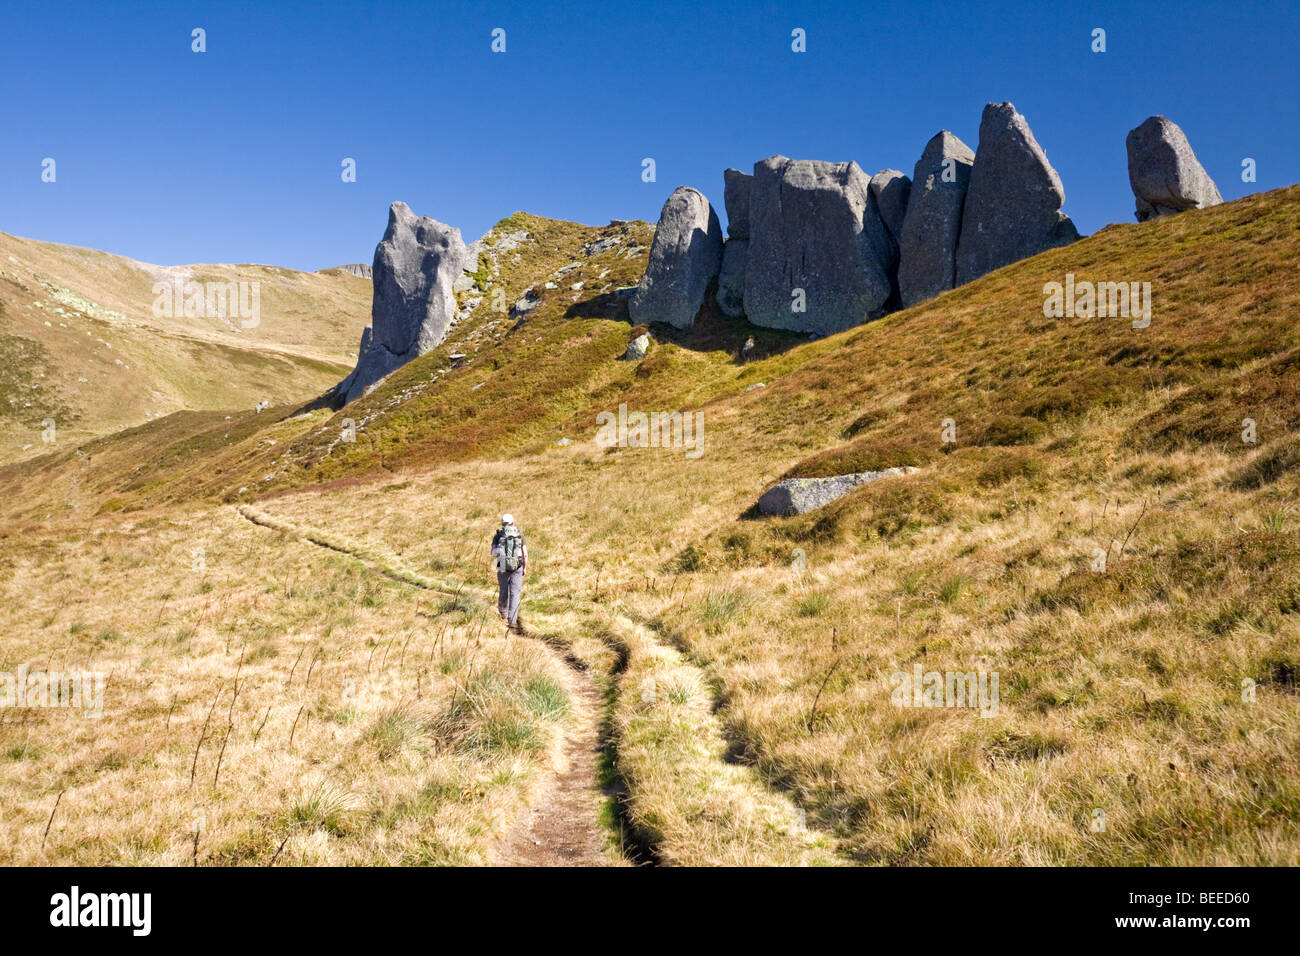 Ein einsamer Wanderer im Sancy-massiv (Puy de Dôme - Frankreich). Randonneur Solitaire Dans le Massif du Sancy (Puy-de-Dôme - Frankreich). Stockfoto